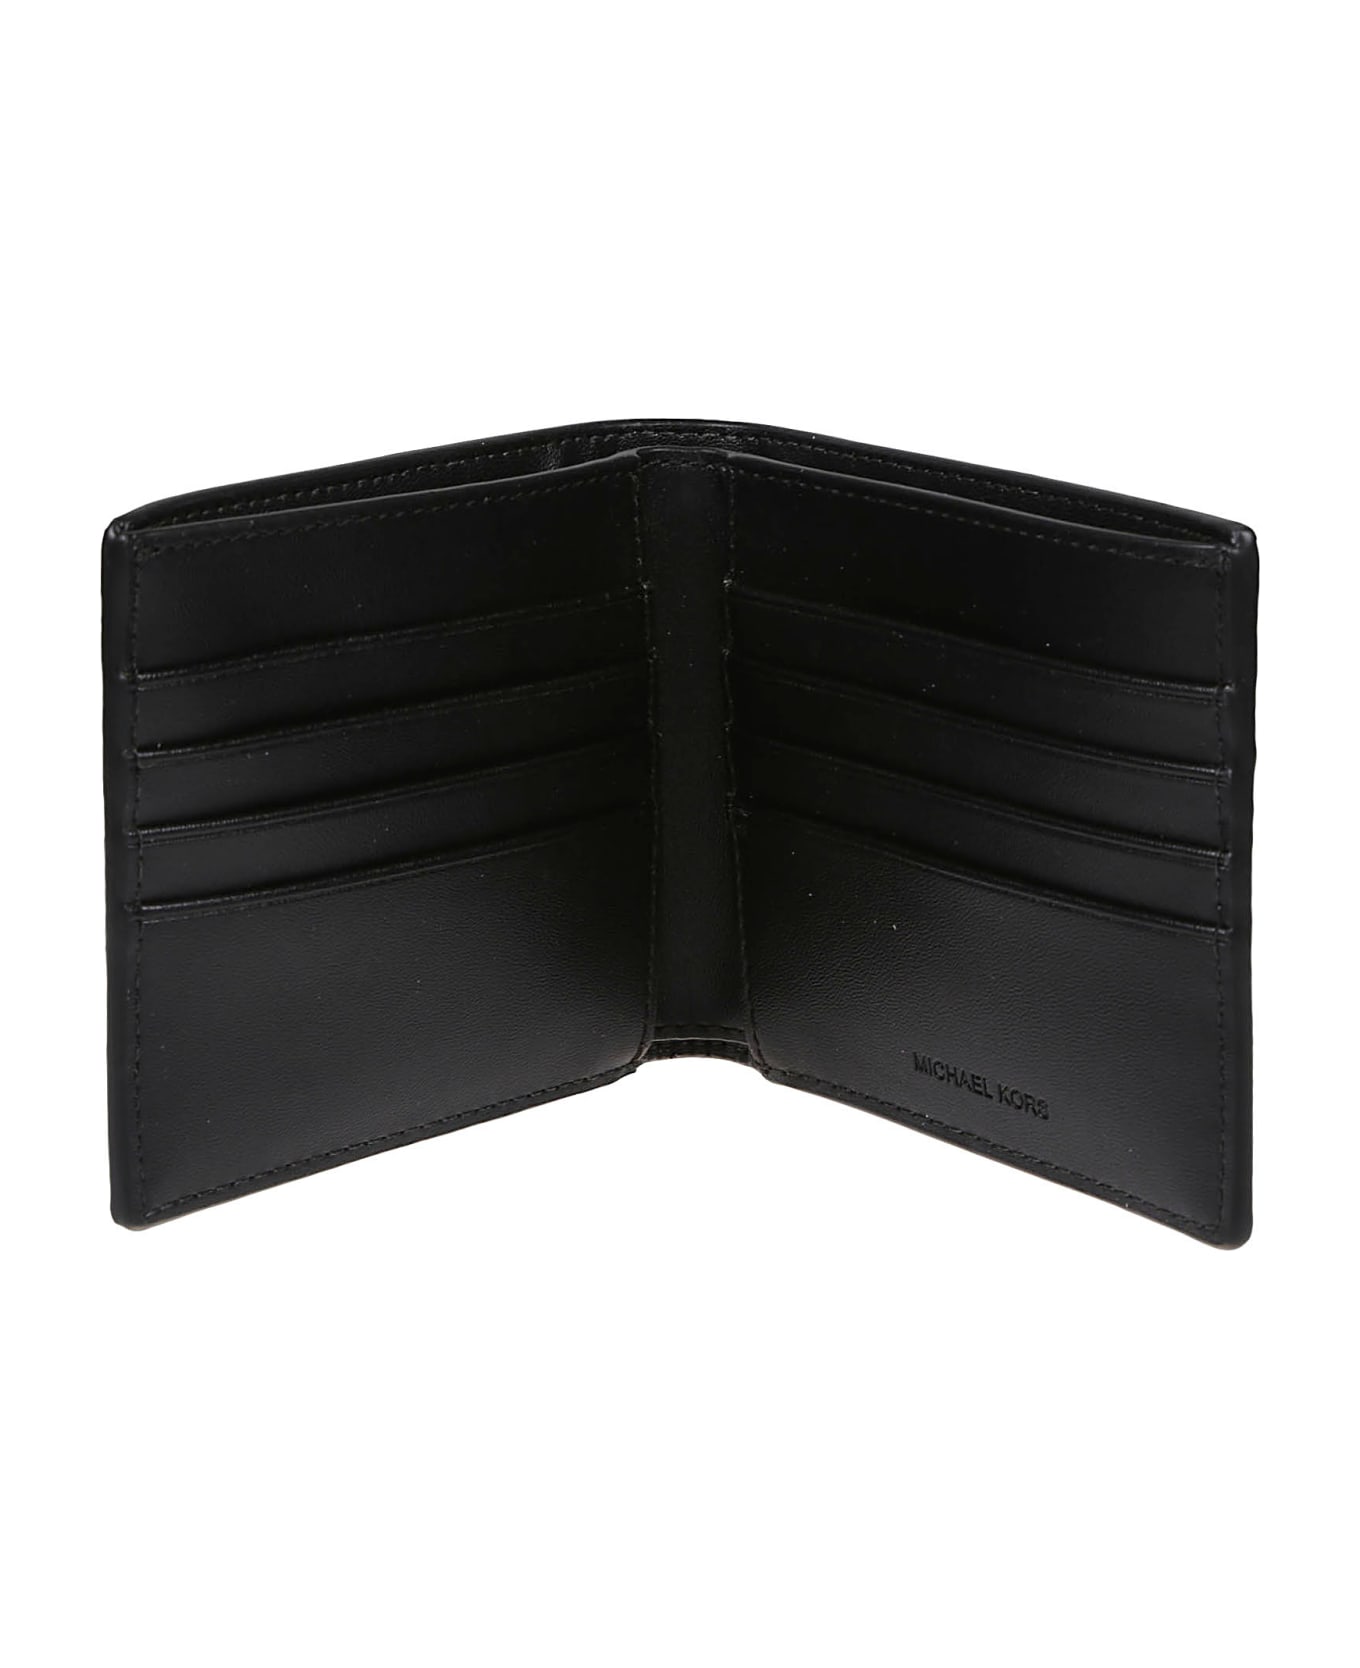 Michael Kors Wallet - Black 財布